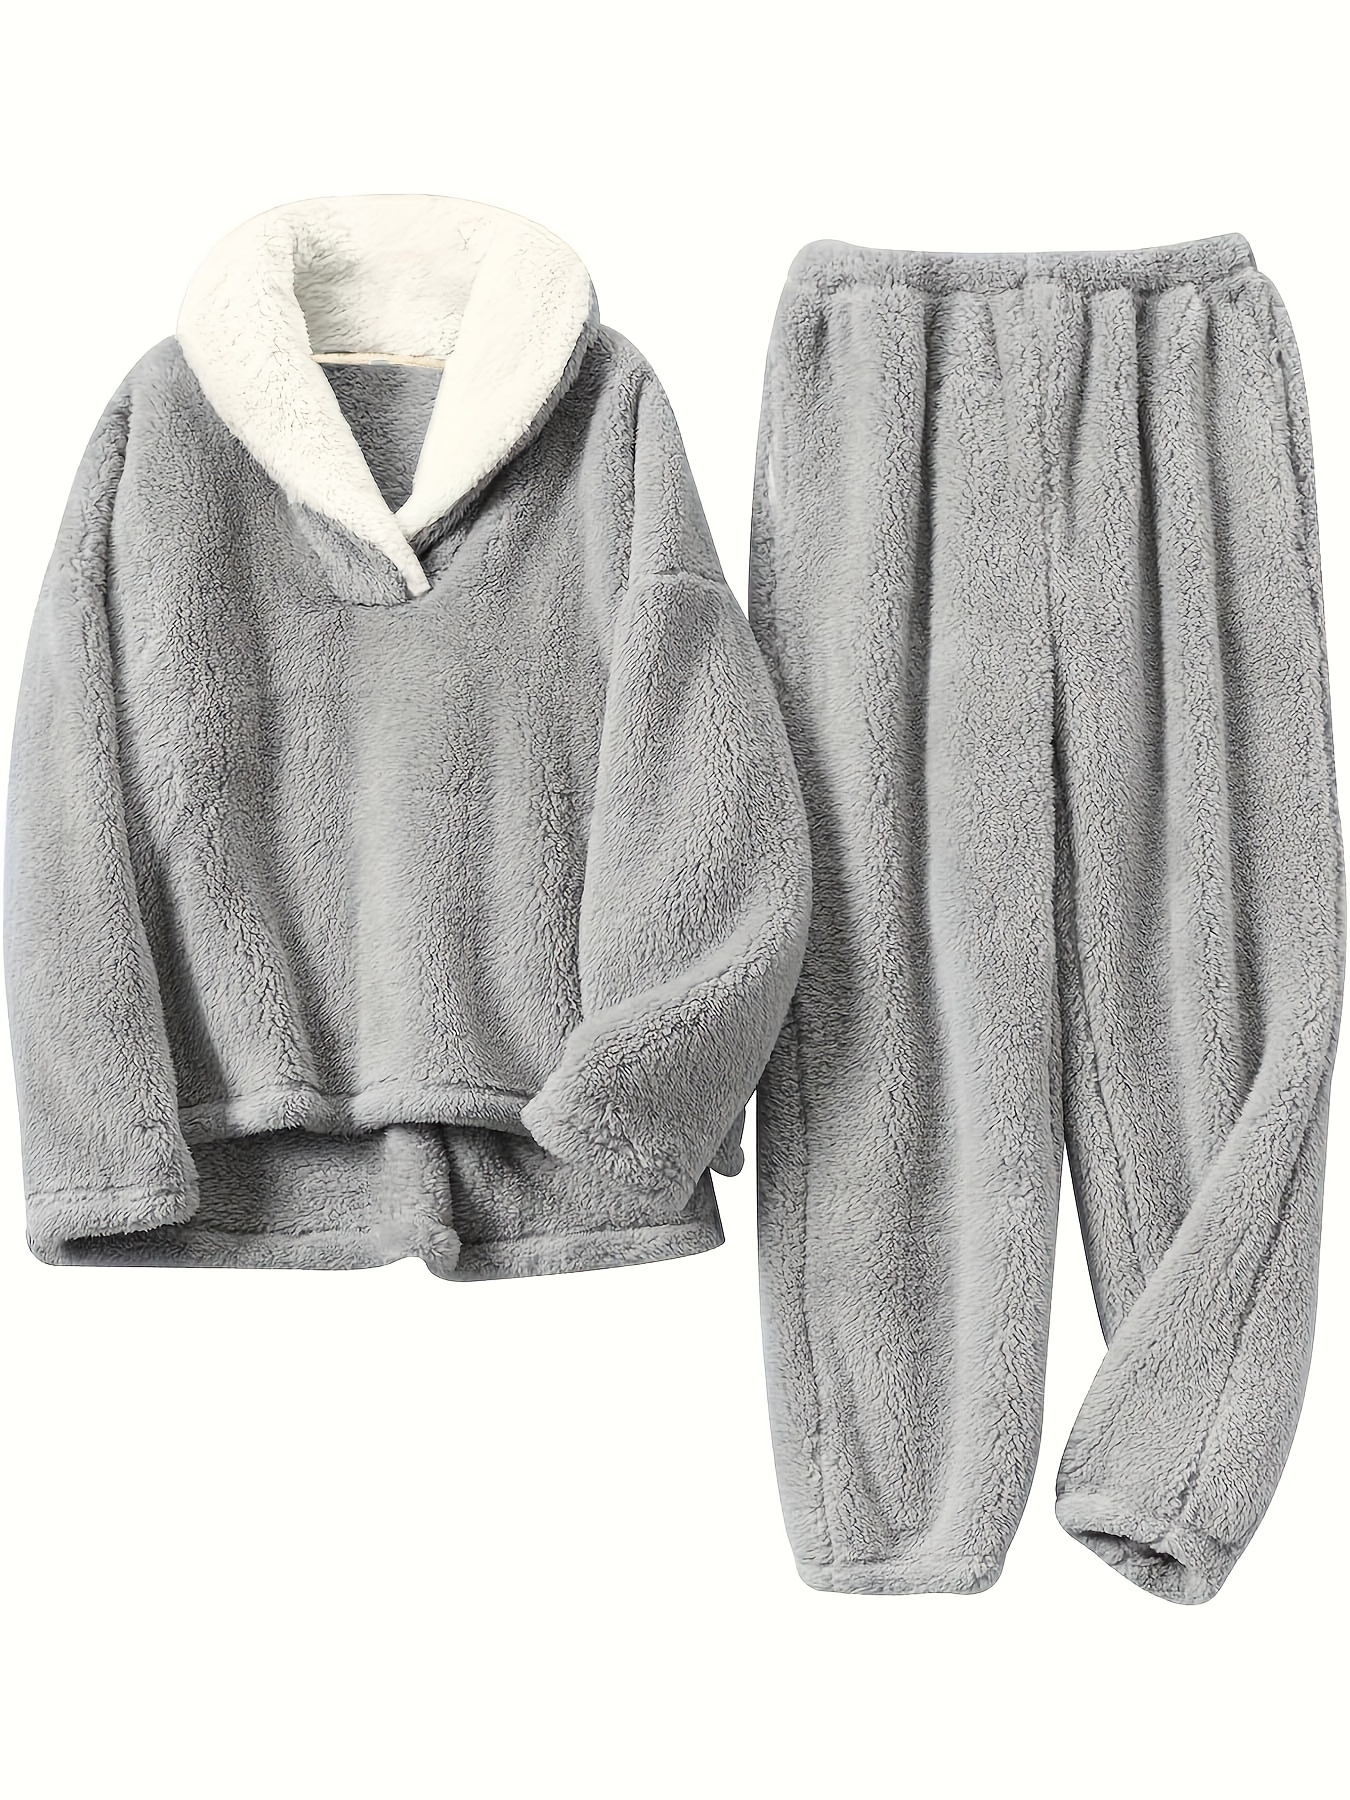 Fuzzy Zipper Lounge Set, Long Sleeve Hooded Top With Pockets & Pants,  Women's Loungewear & Sleepwear